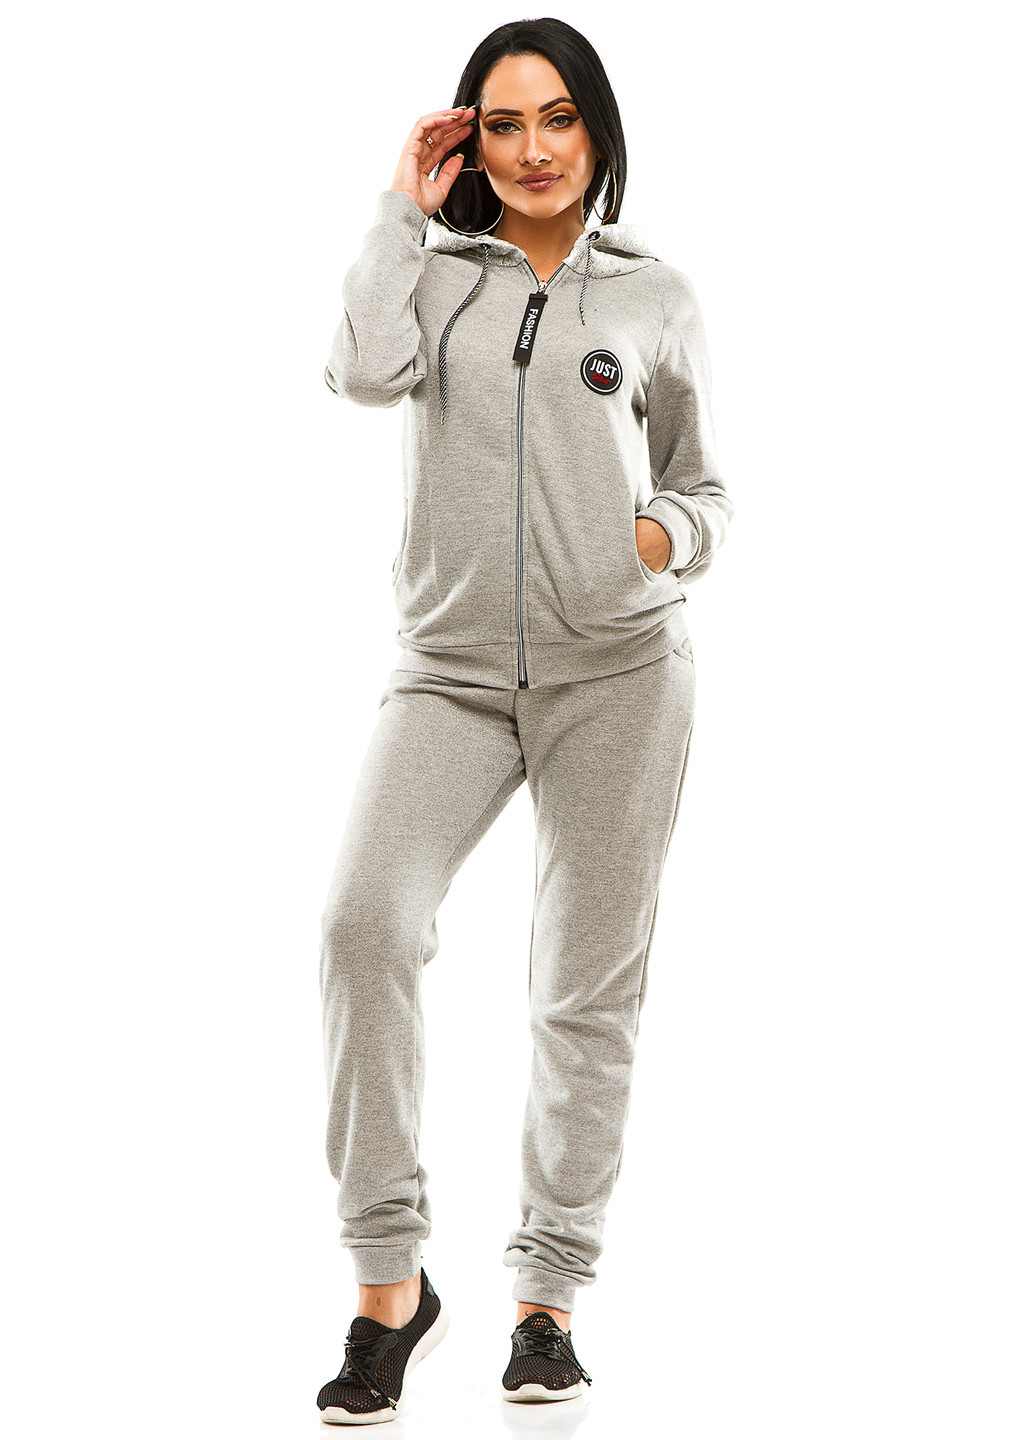 Спортивний костюм Demma з довгим рукавом меланж світло-сірий спортивний